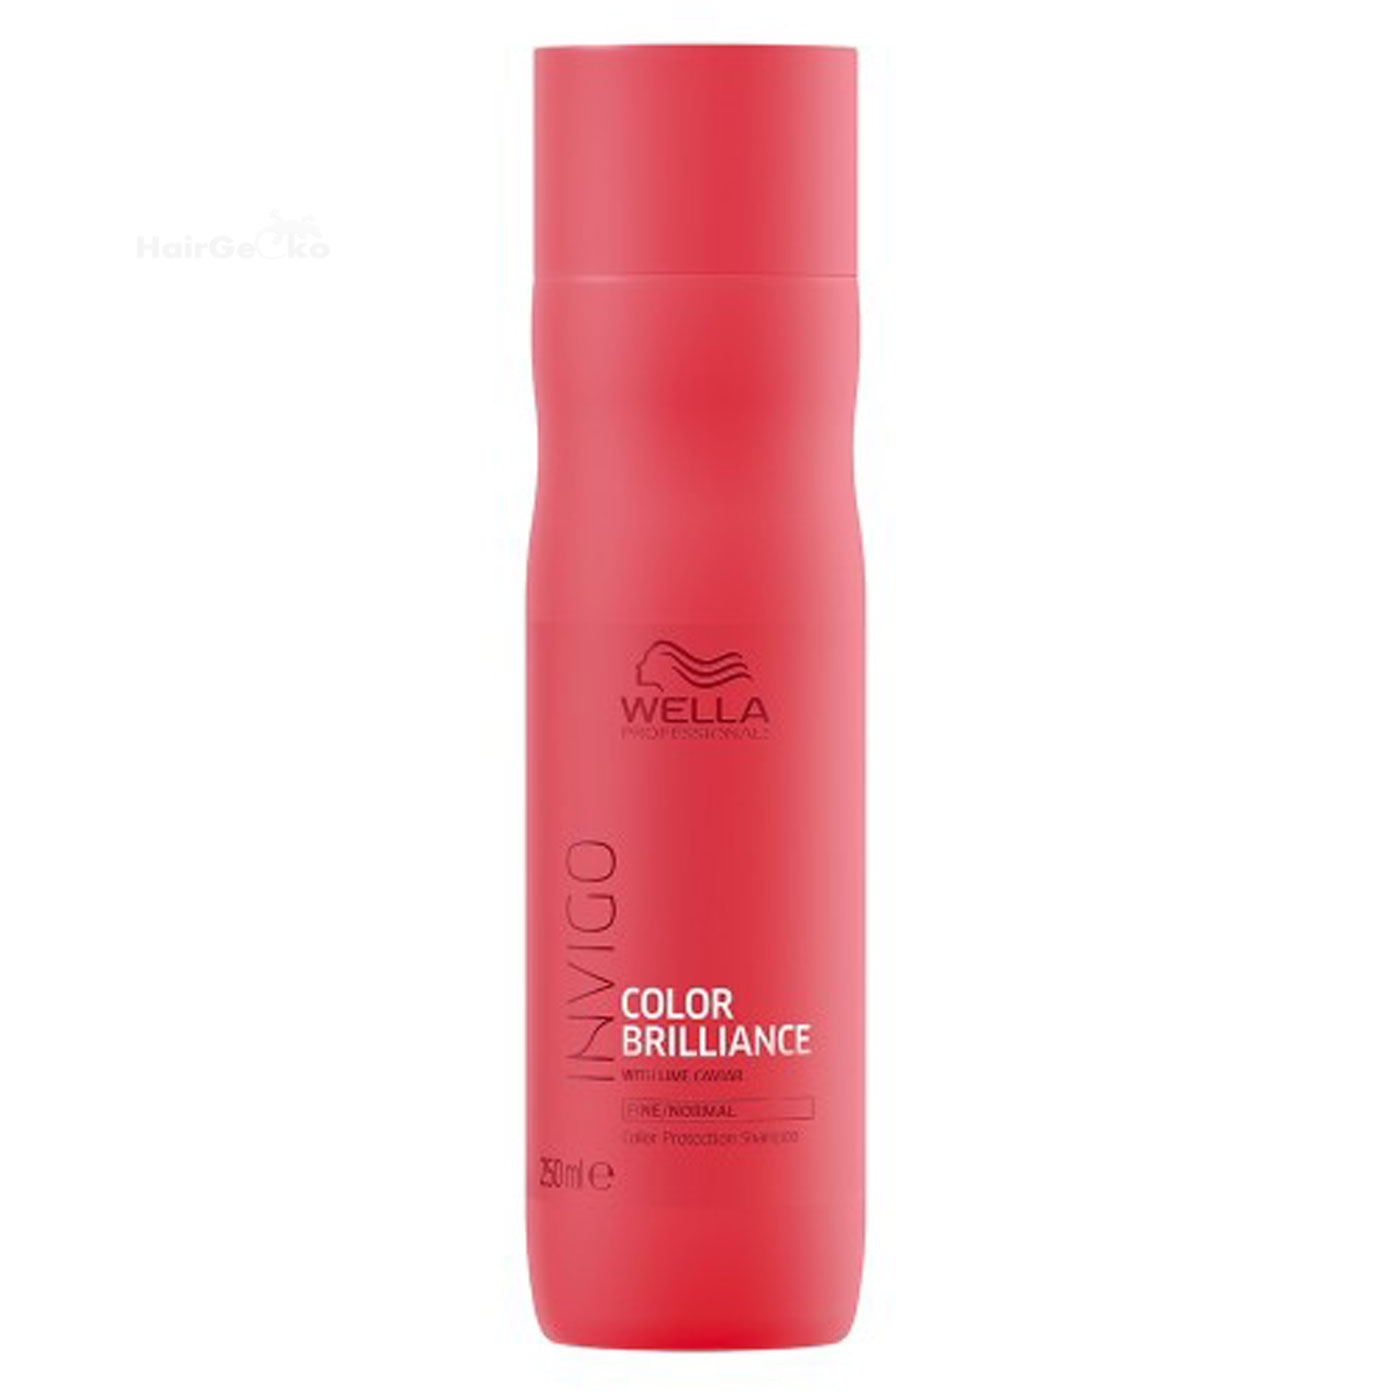 Wella Care Invigo Color Brilliance Color Protection Shampoo Feines/Normales Haar 250ml